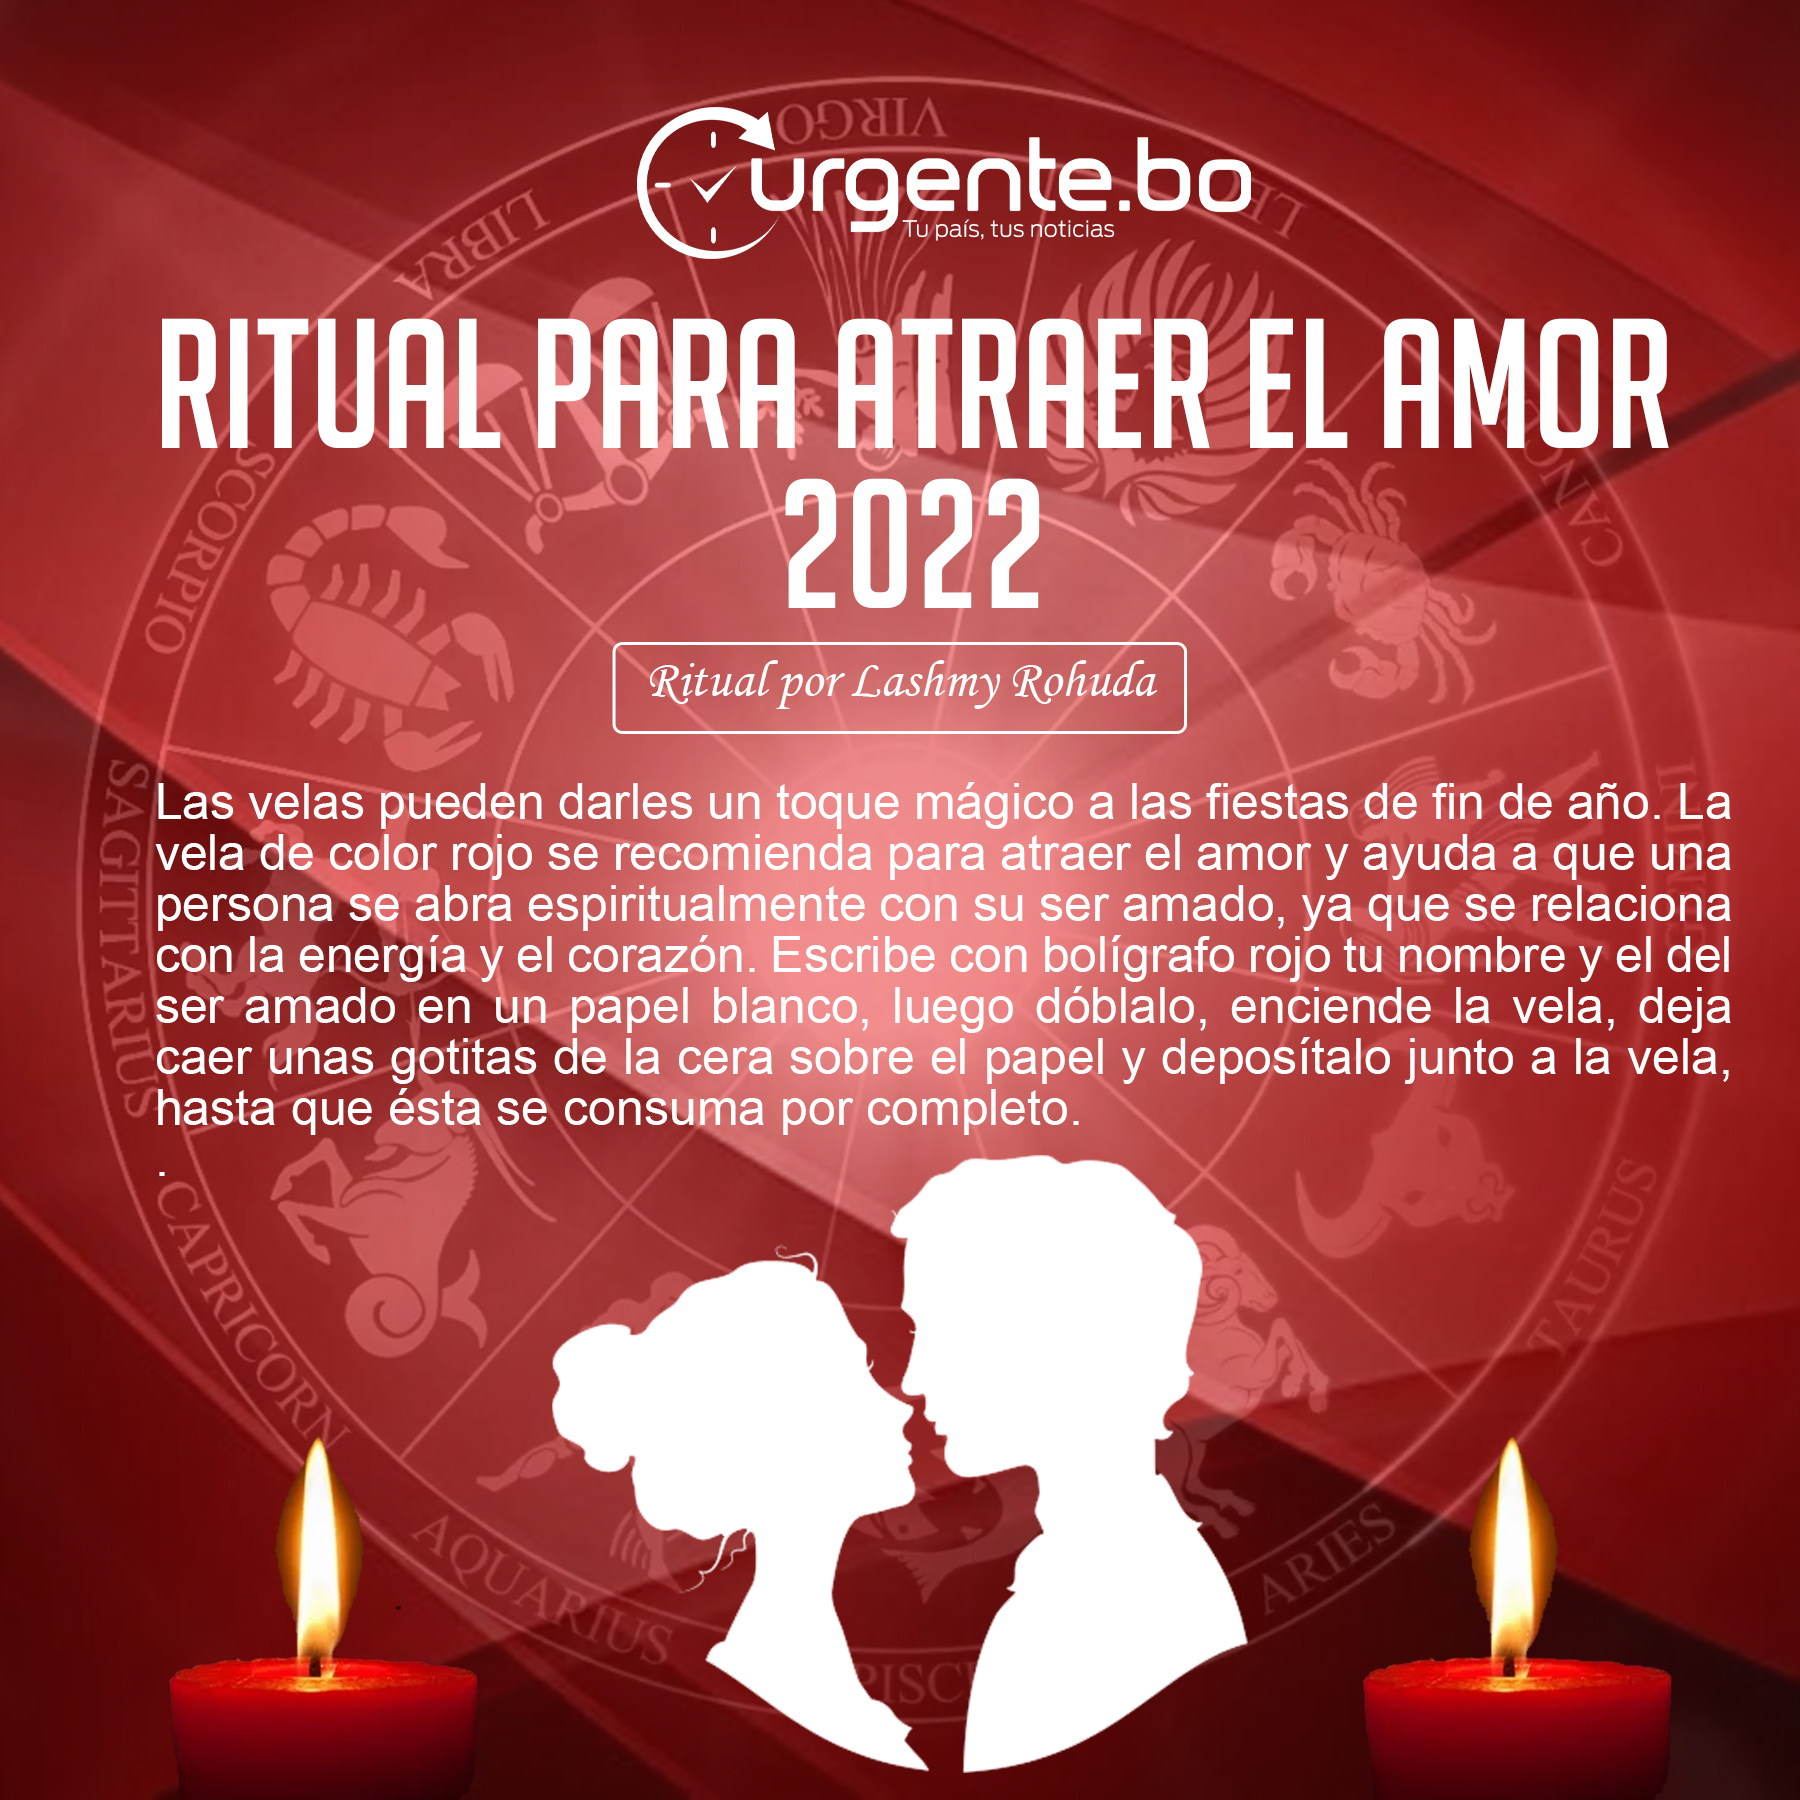 texto comentarista fluir Conozca el ritual para atraer el amor este 2022 | Urgentebo